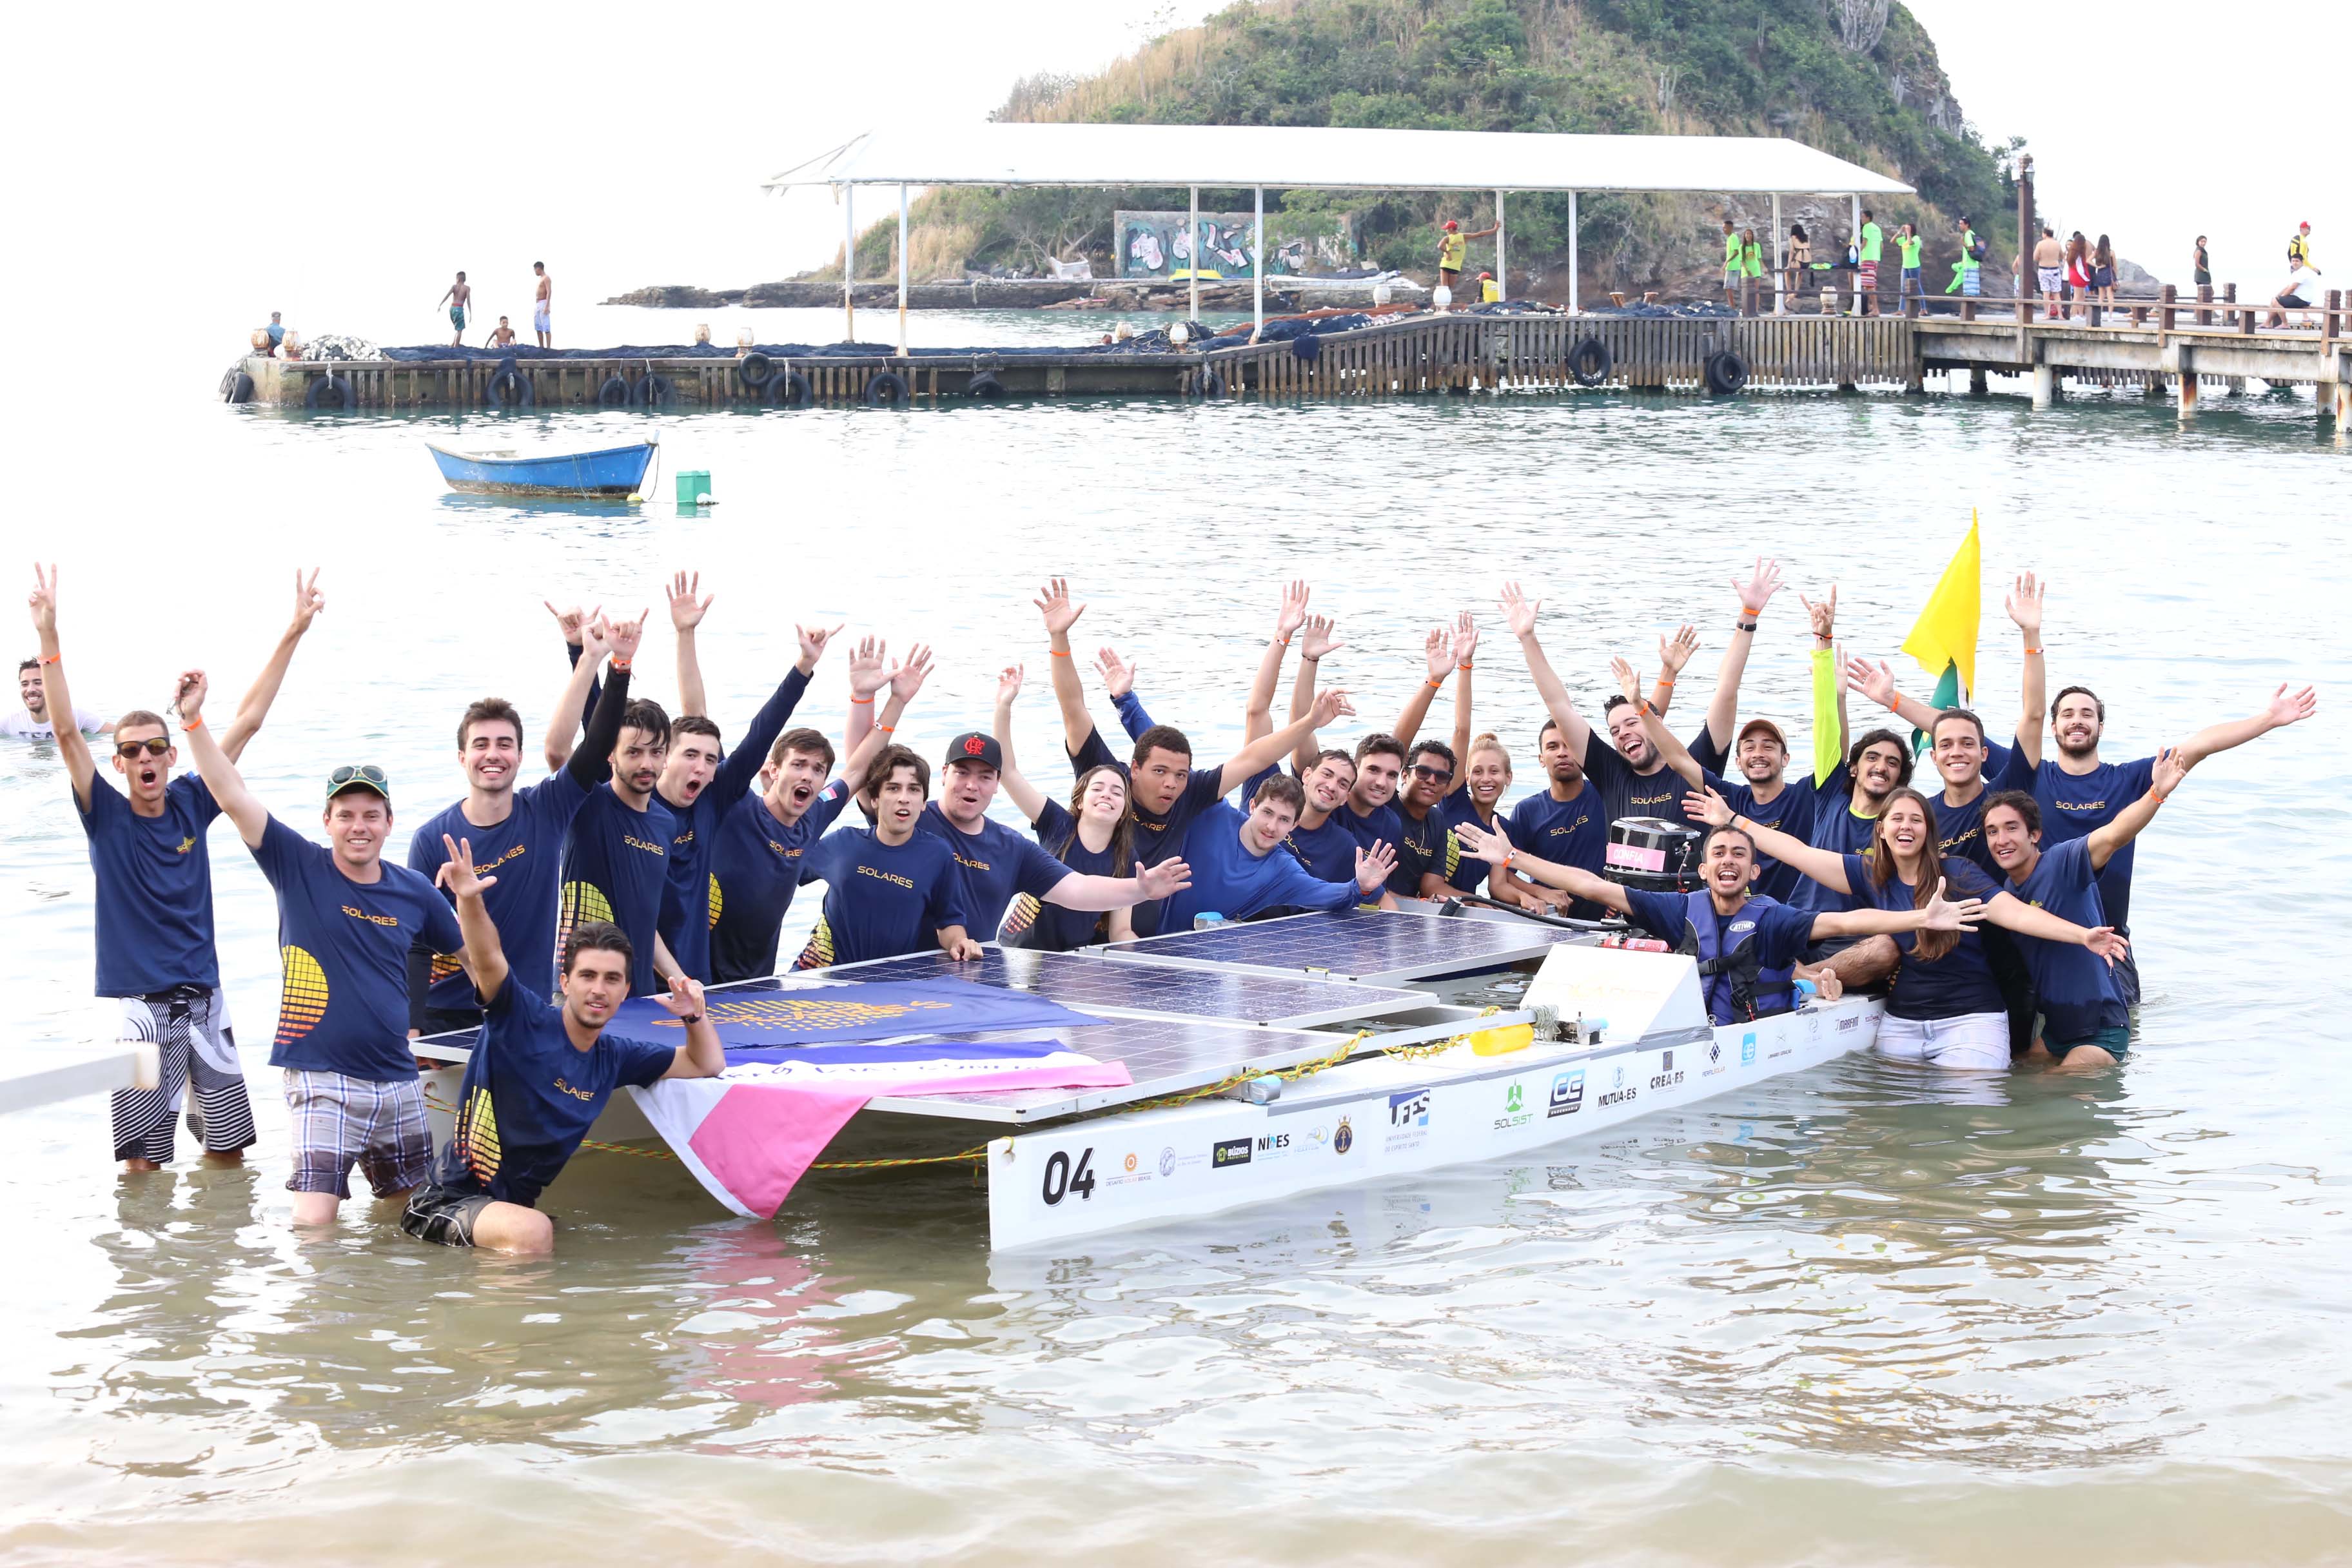 Estudantes comemoram vitória junto ao barco da competição, no mar